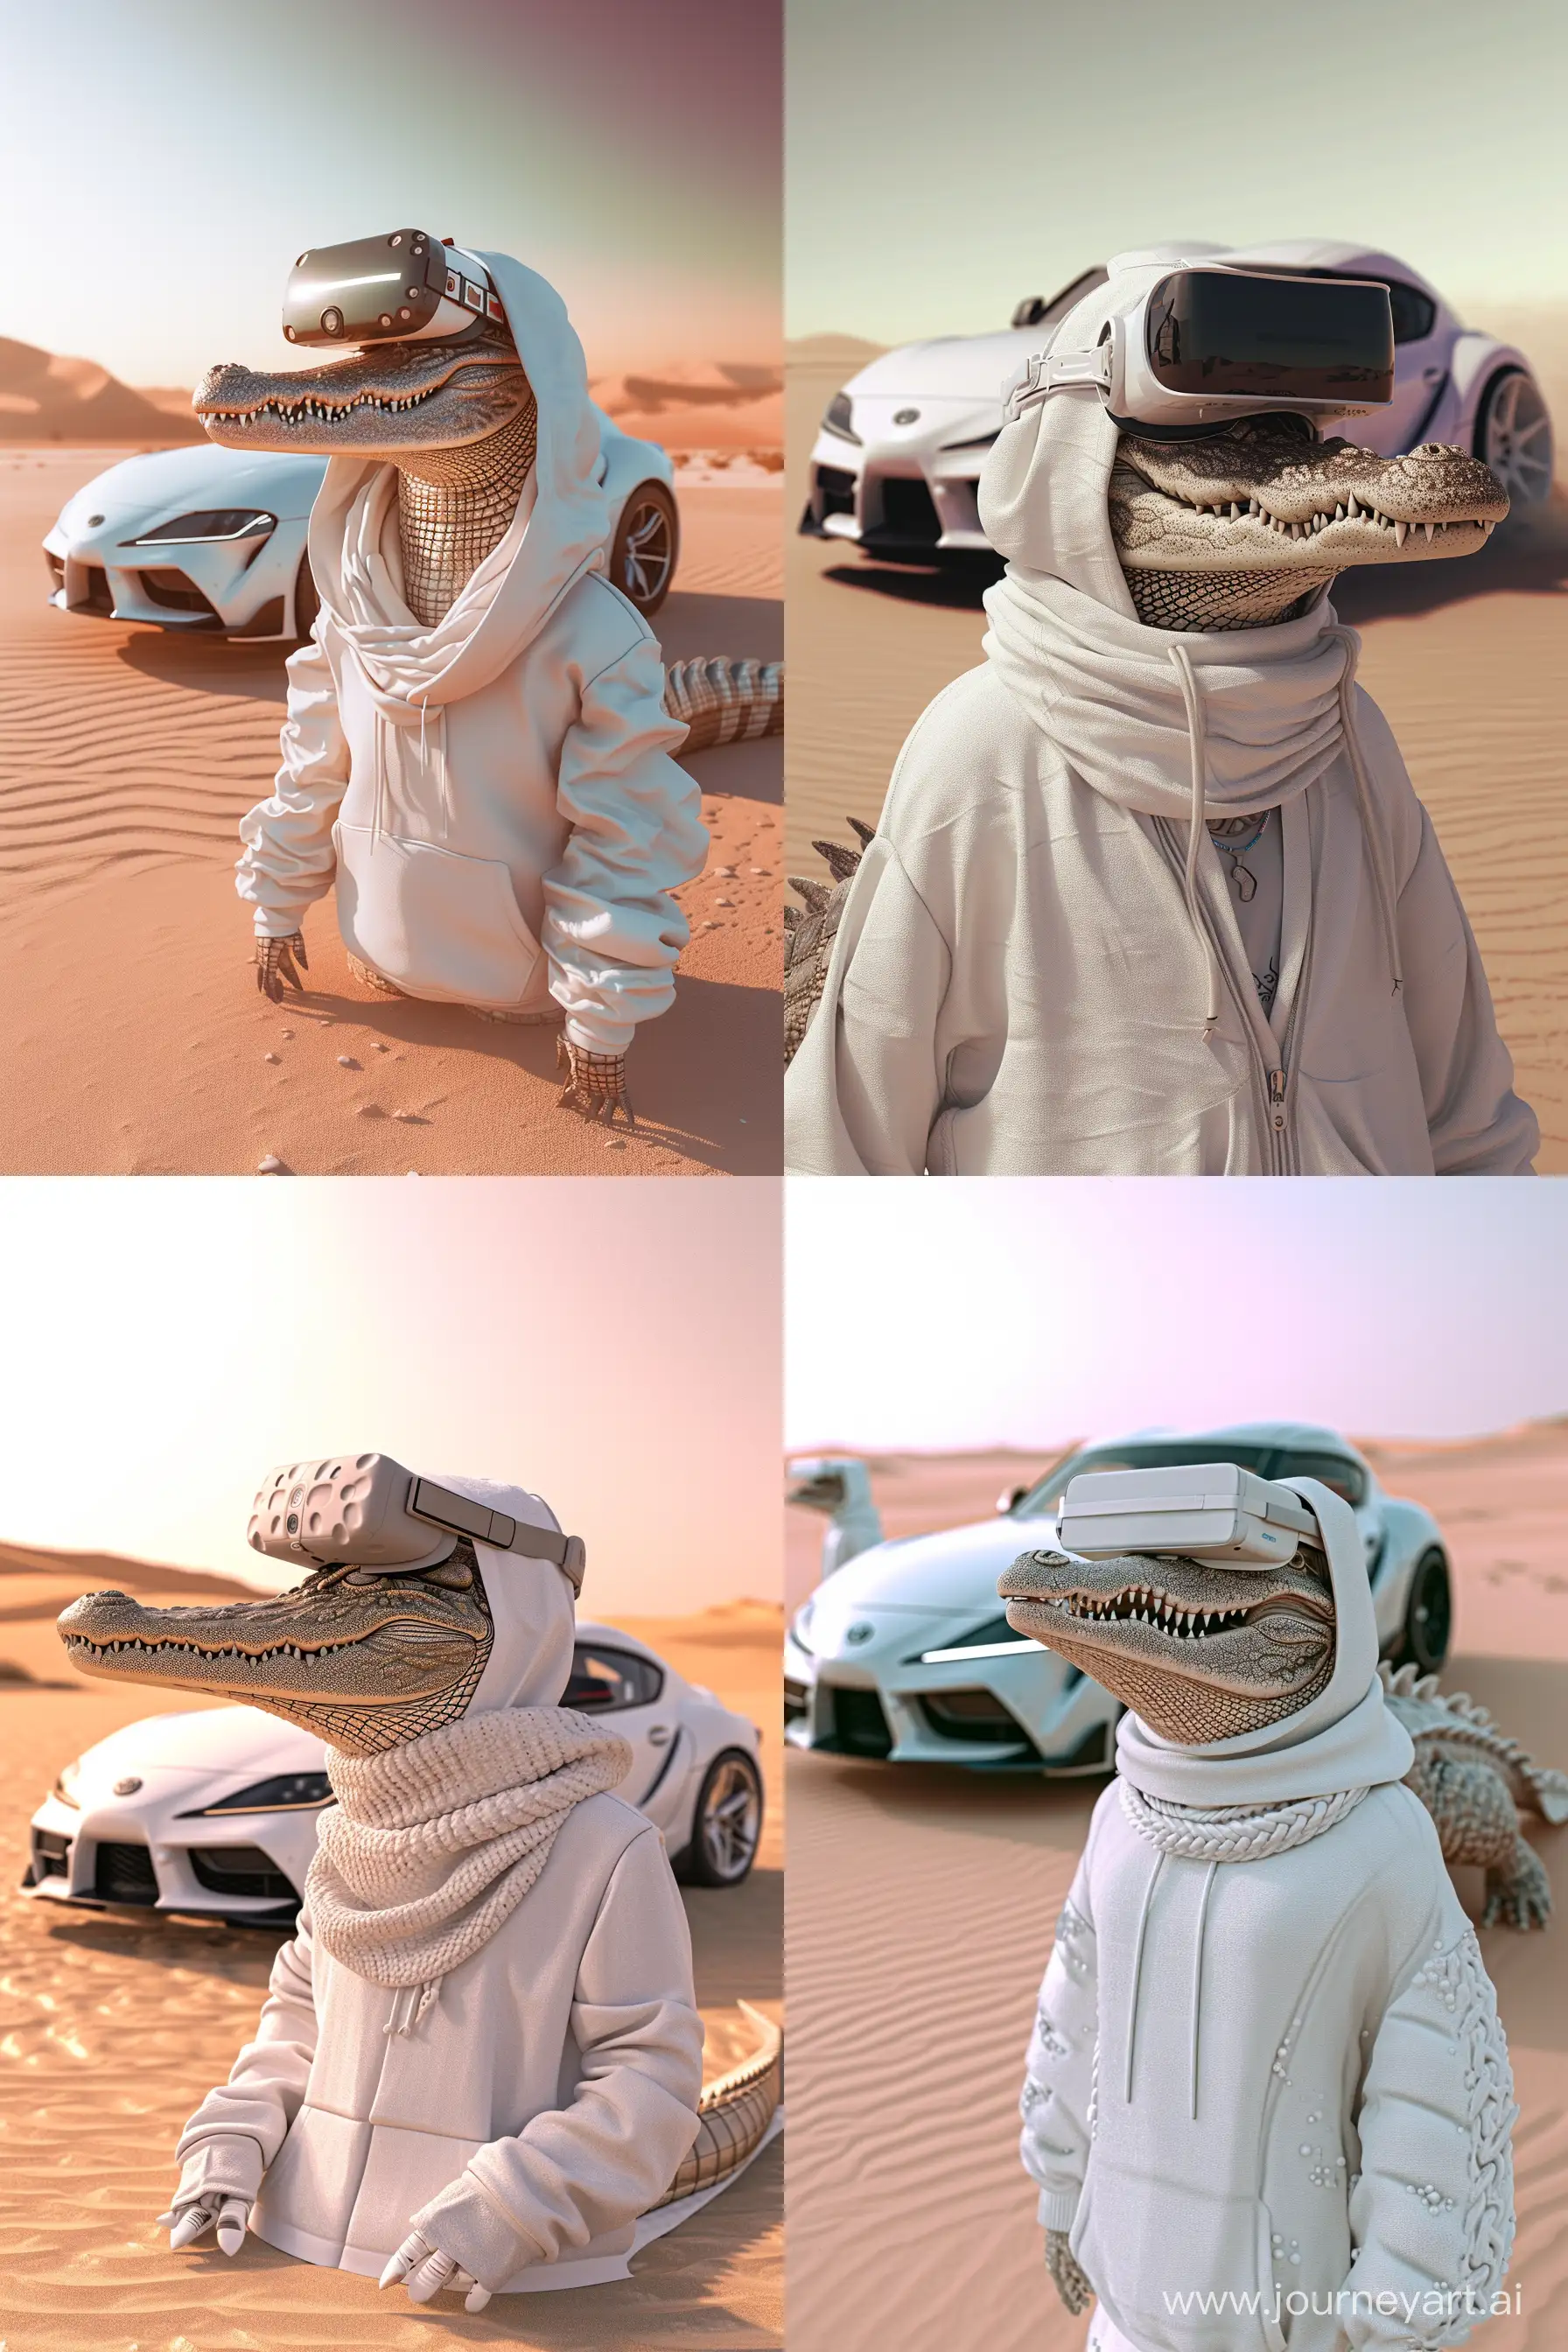 Futuristic-Crocodile-in-Desert-VR-Adventure-with-Supra-MK4